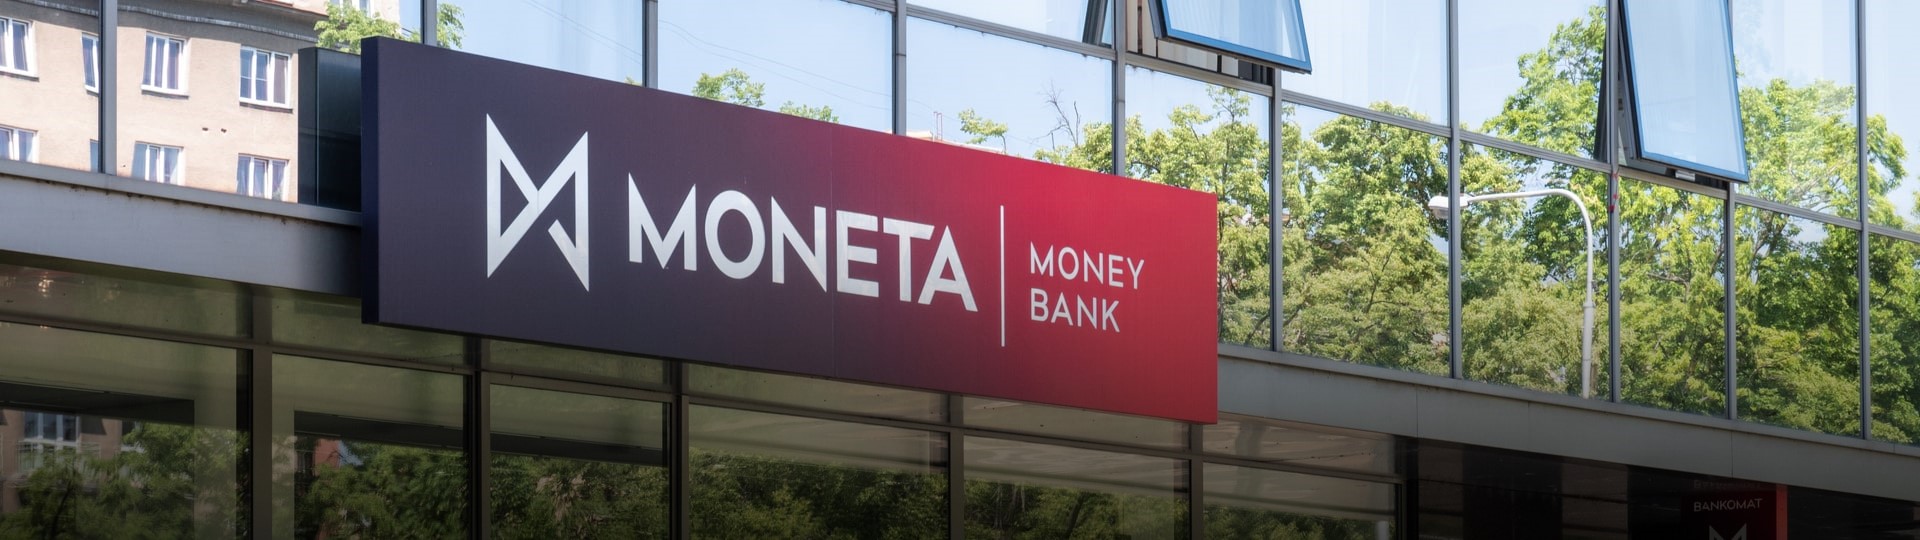 Akcionáři Monety neodsouhlasili financování spojení s bankovní částí PPF